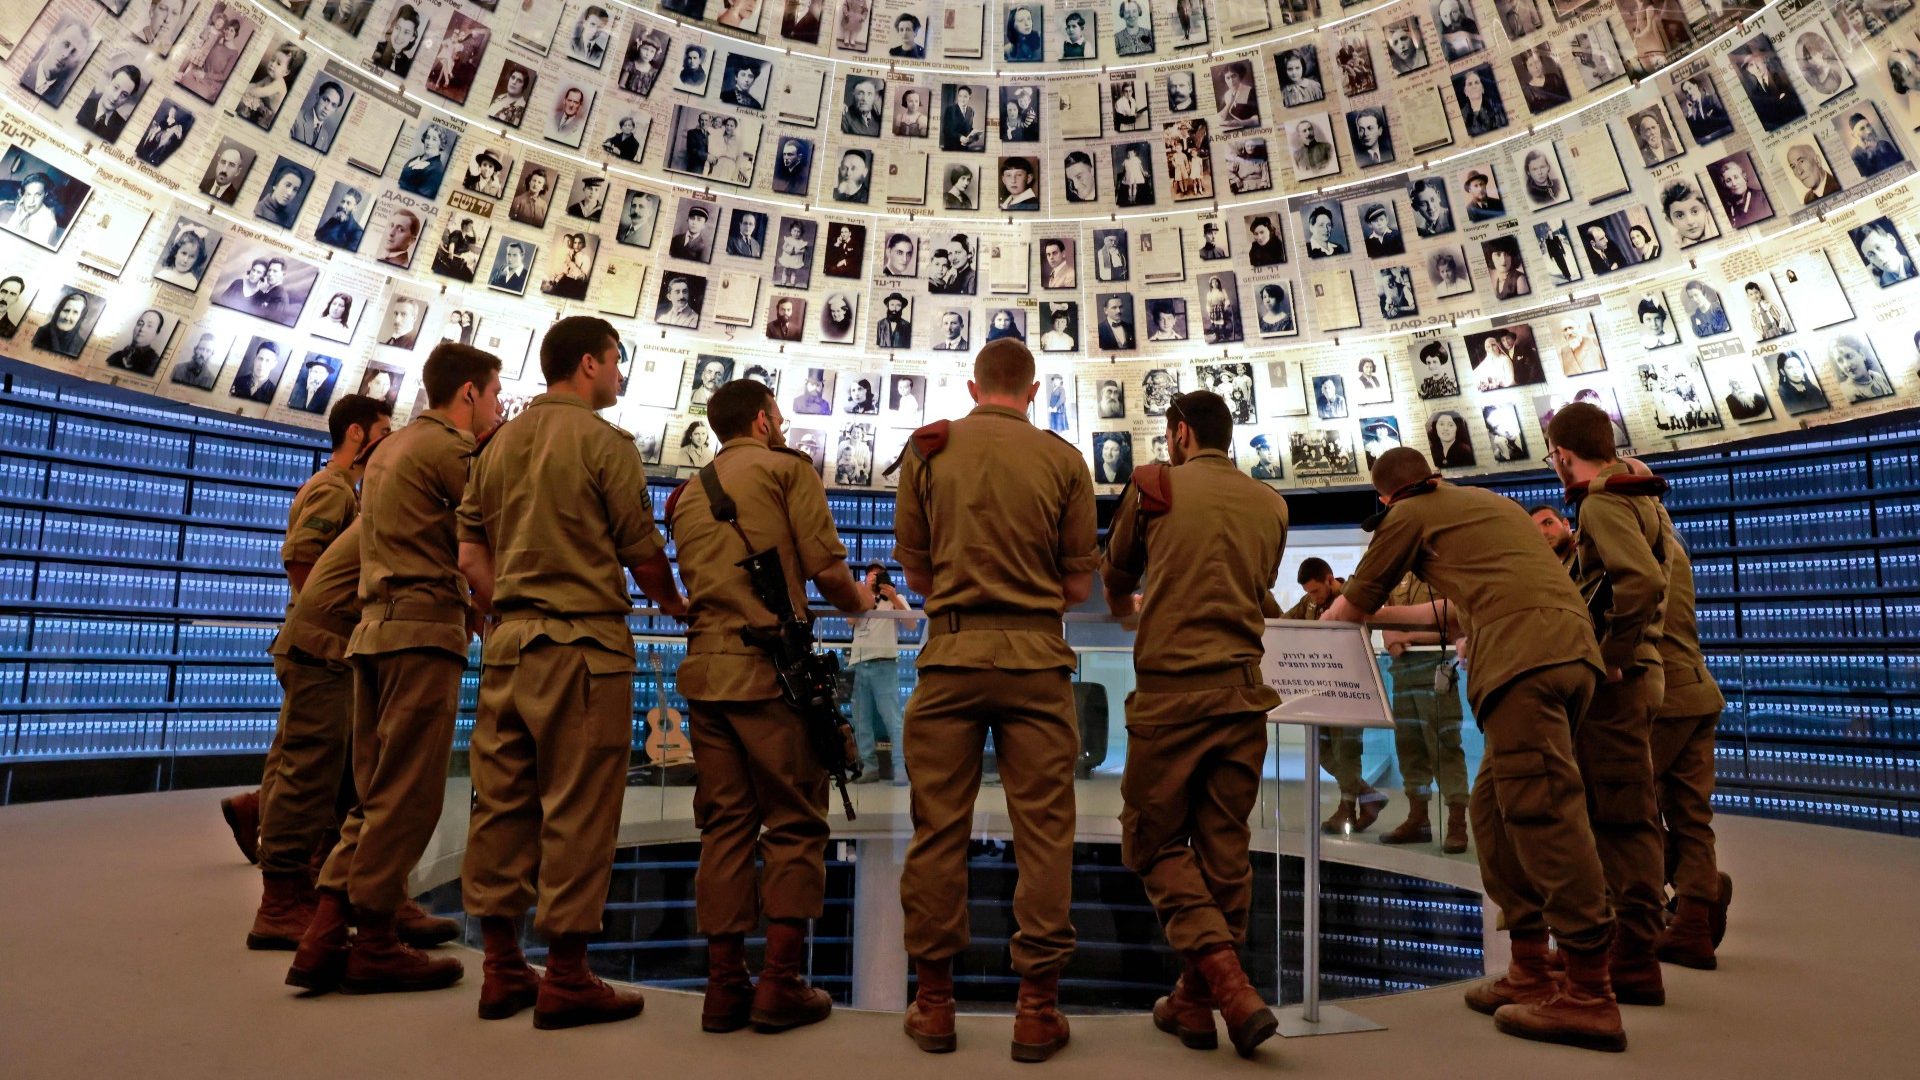 Qué fue el Holocausto? ¿Qué significó y cuántos muertos dejó?